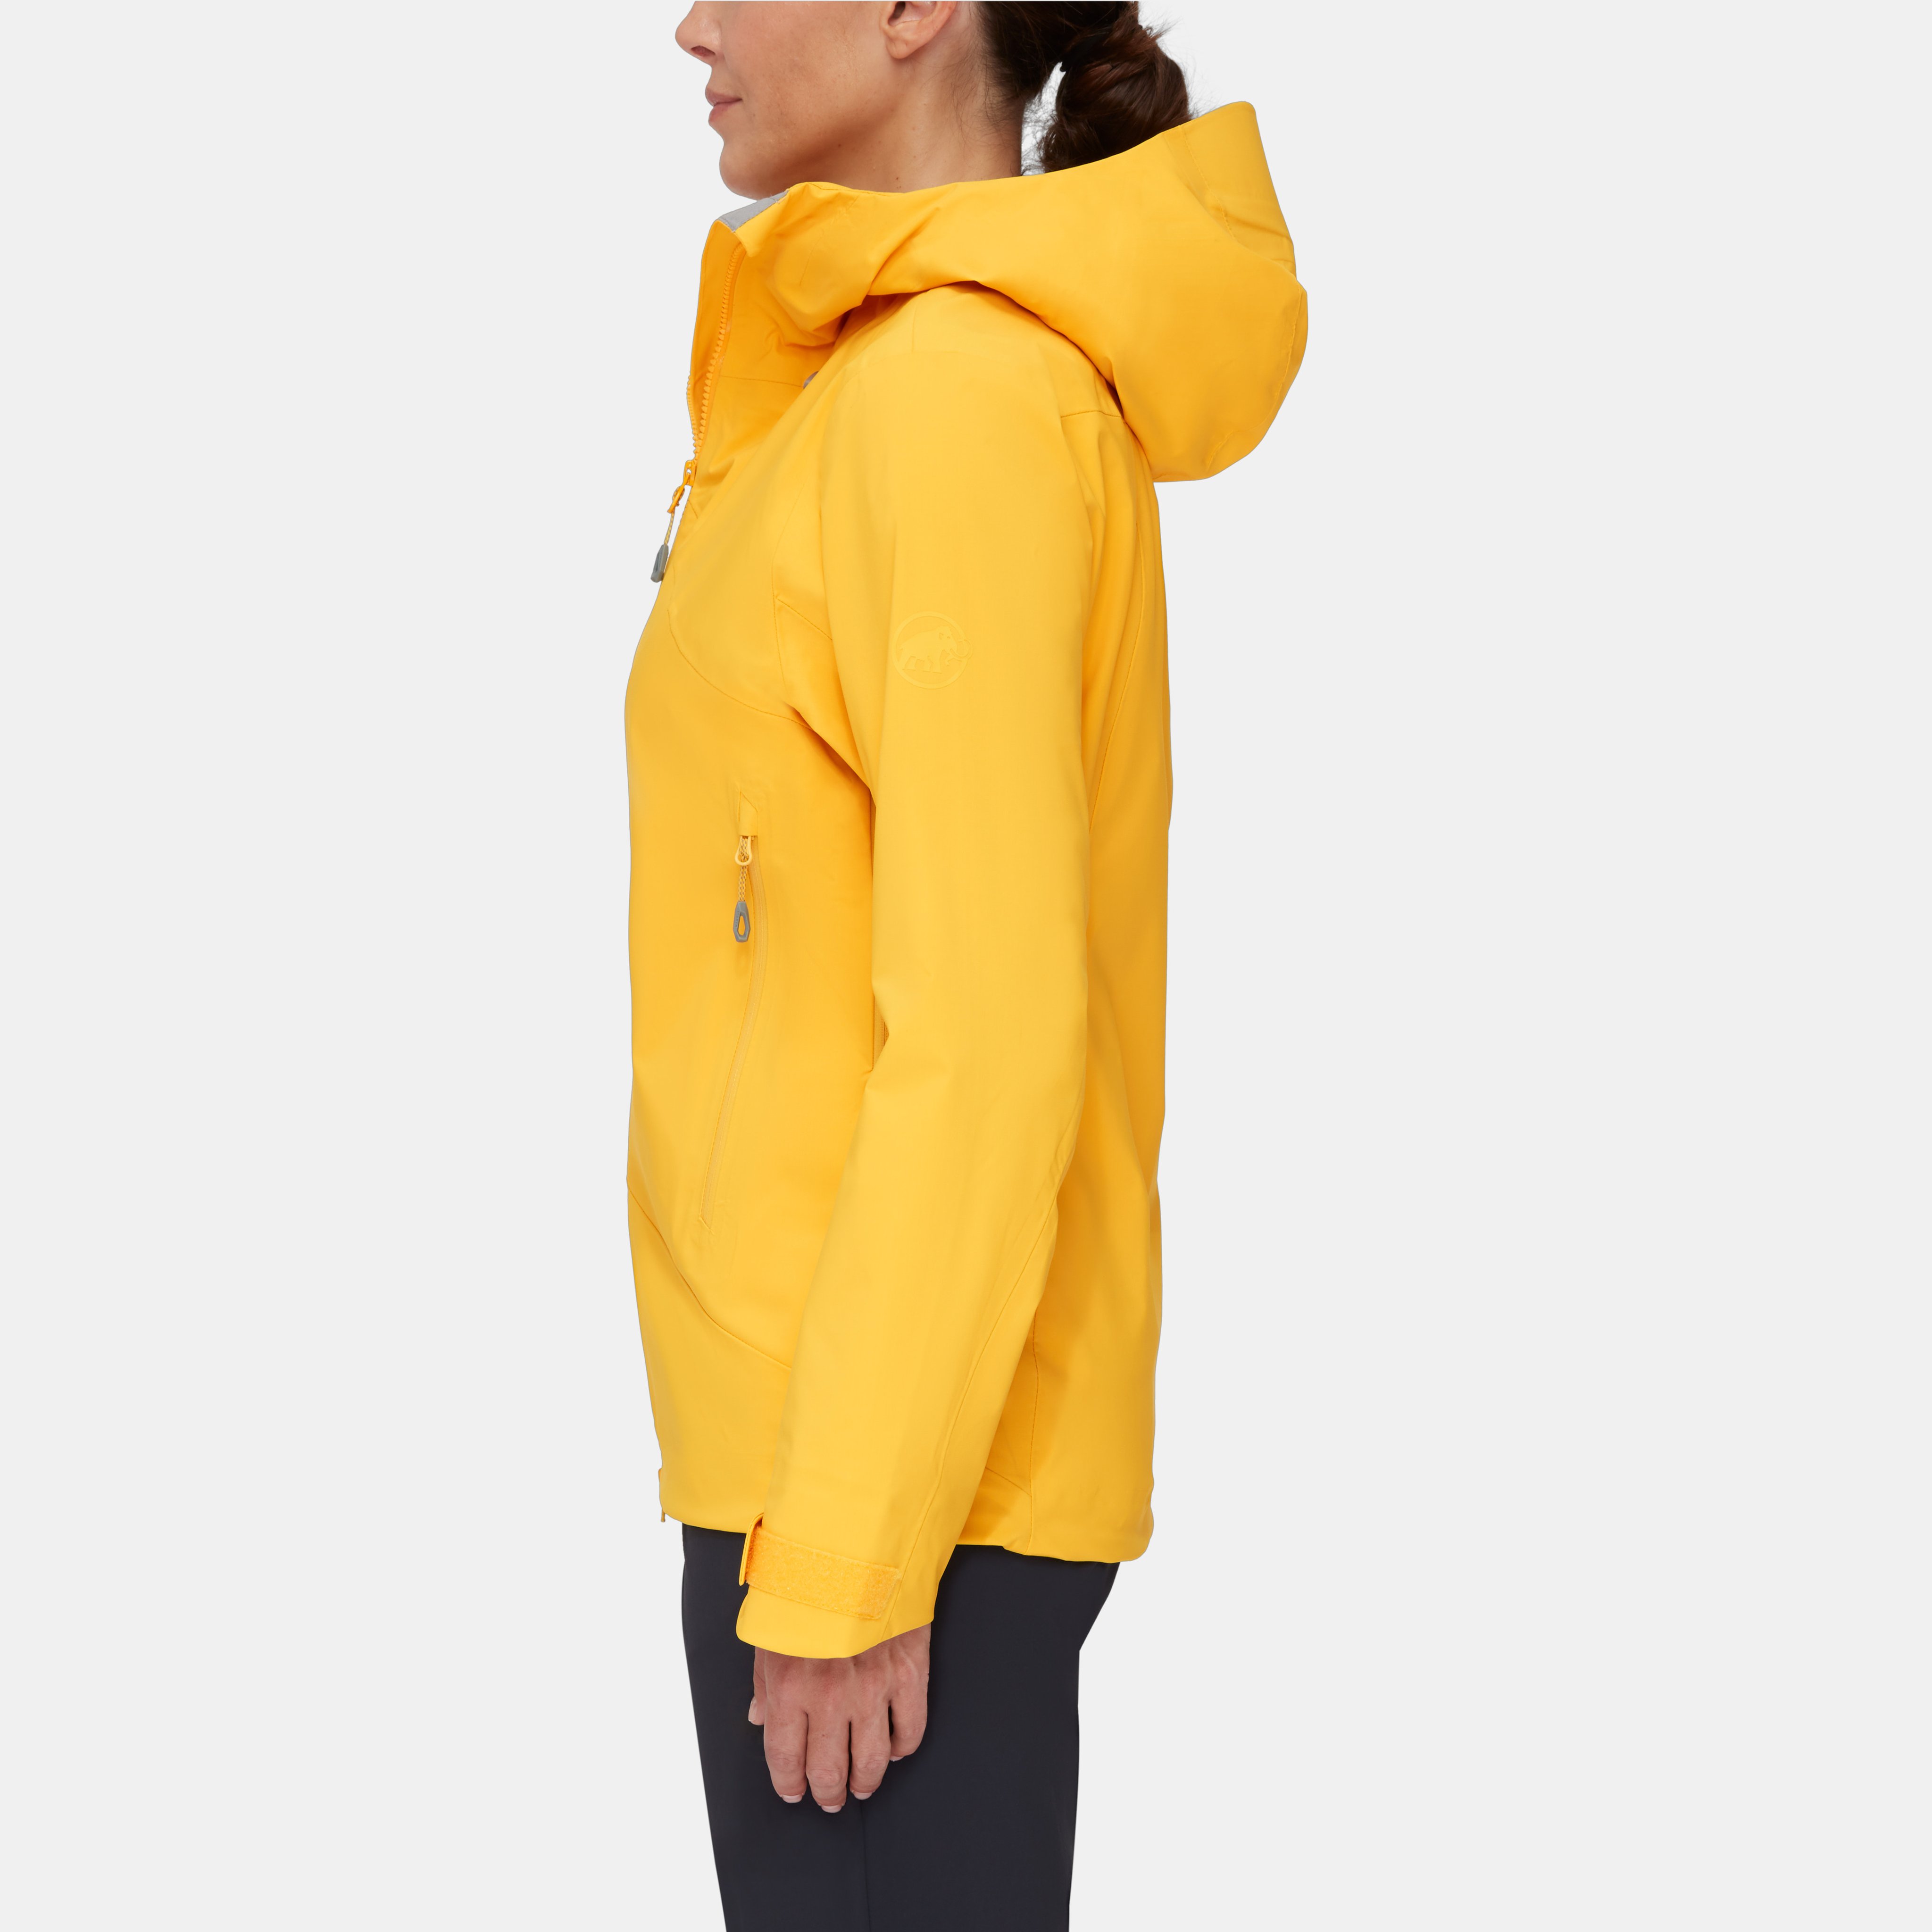 Kento HS Hooded Jacket Women product image